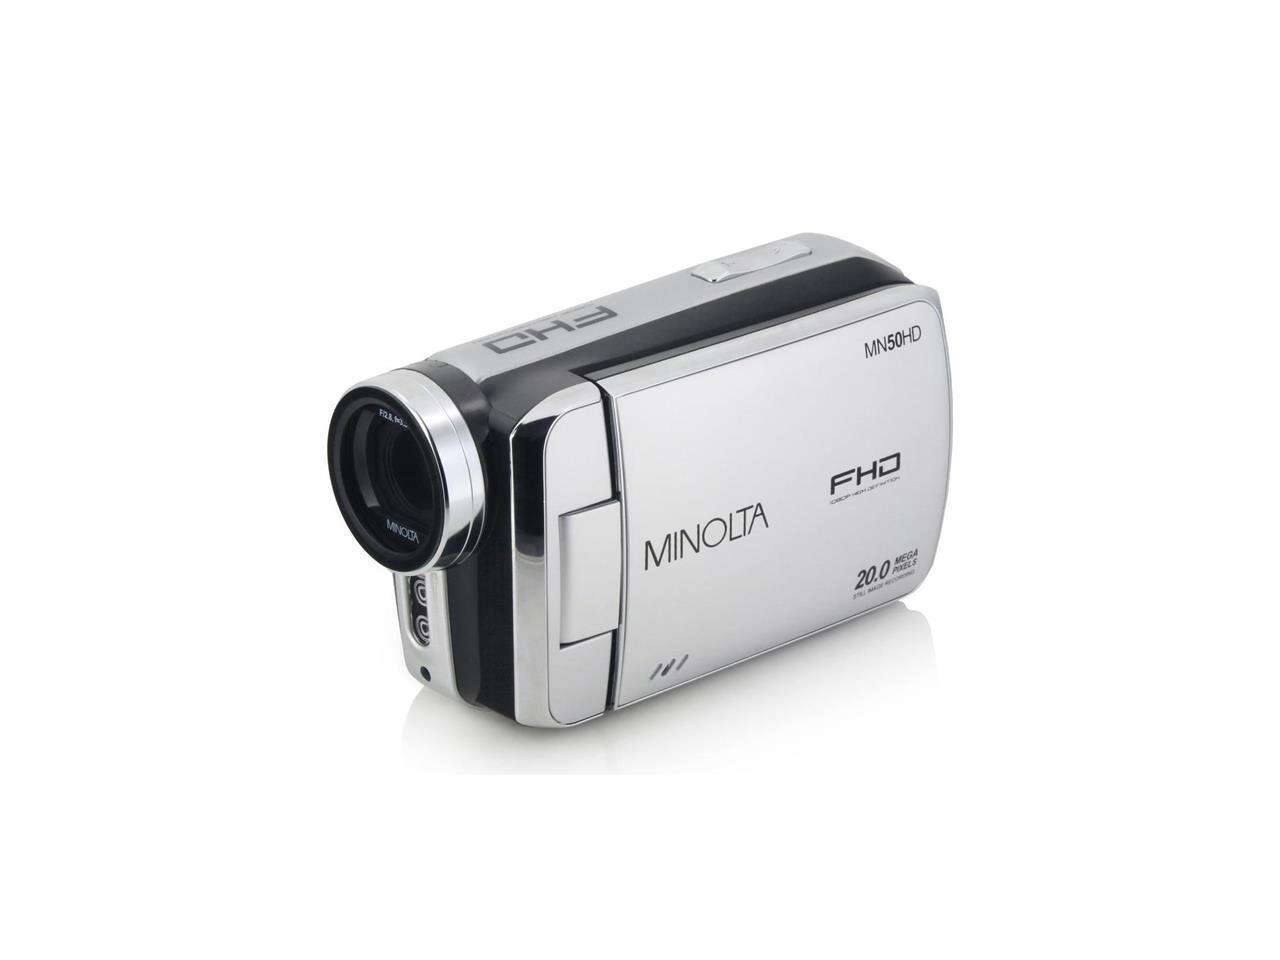 Minolta MN50HD 1080p Full HD 20MP Digital Camcorder, Silver #MN50HD-S